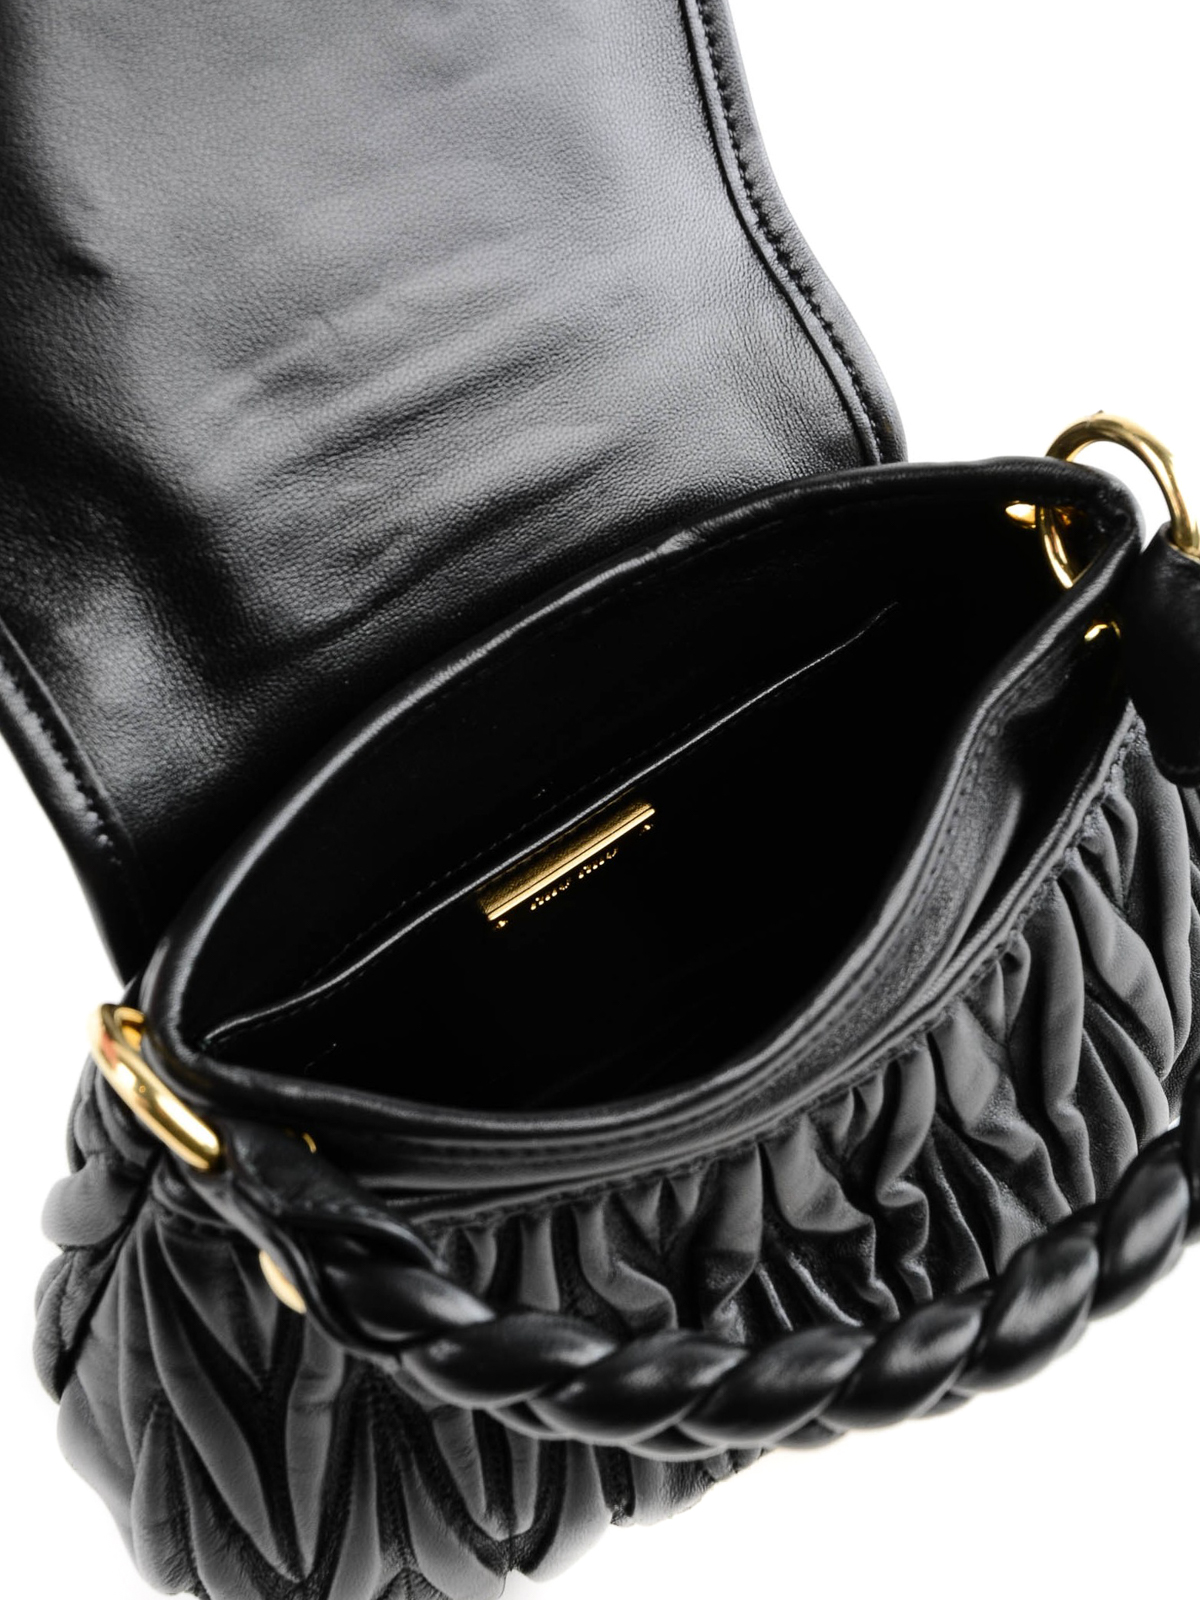 Miu Miu Matelasse Coffer Black Lambskin Leather Shoulder Bag